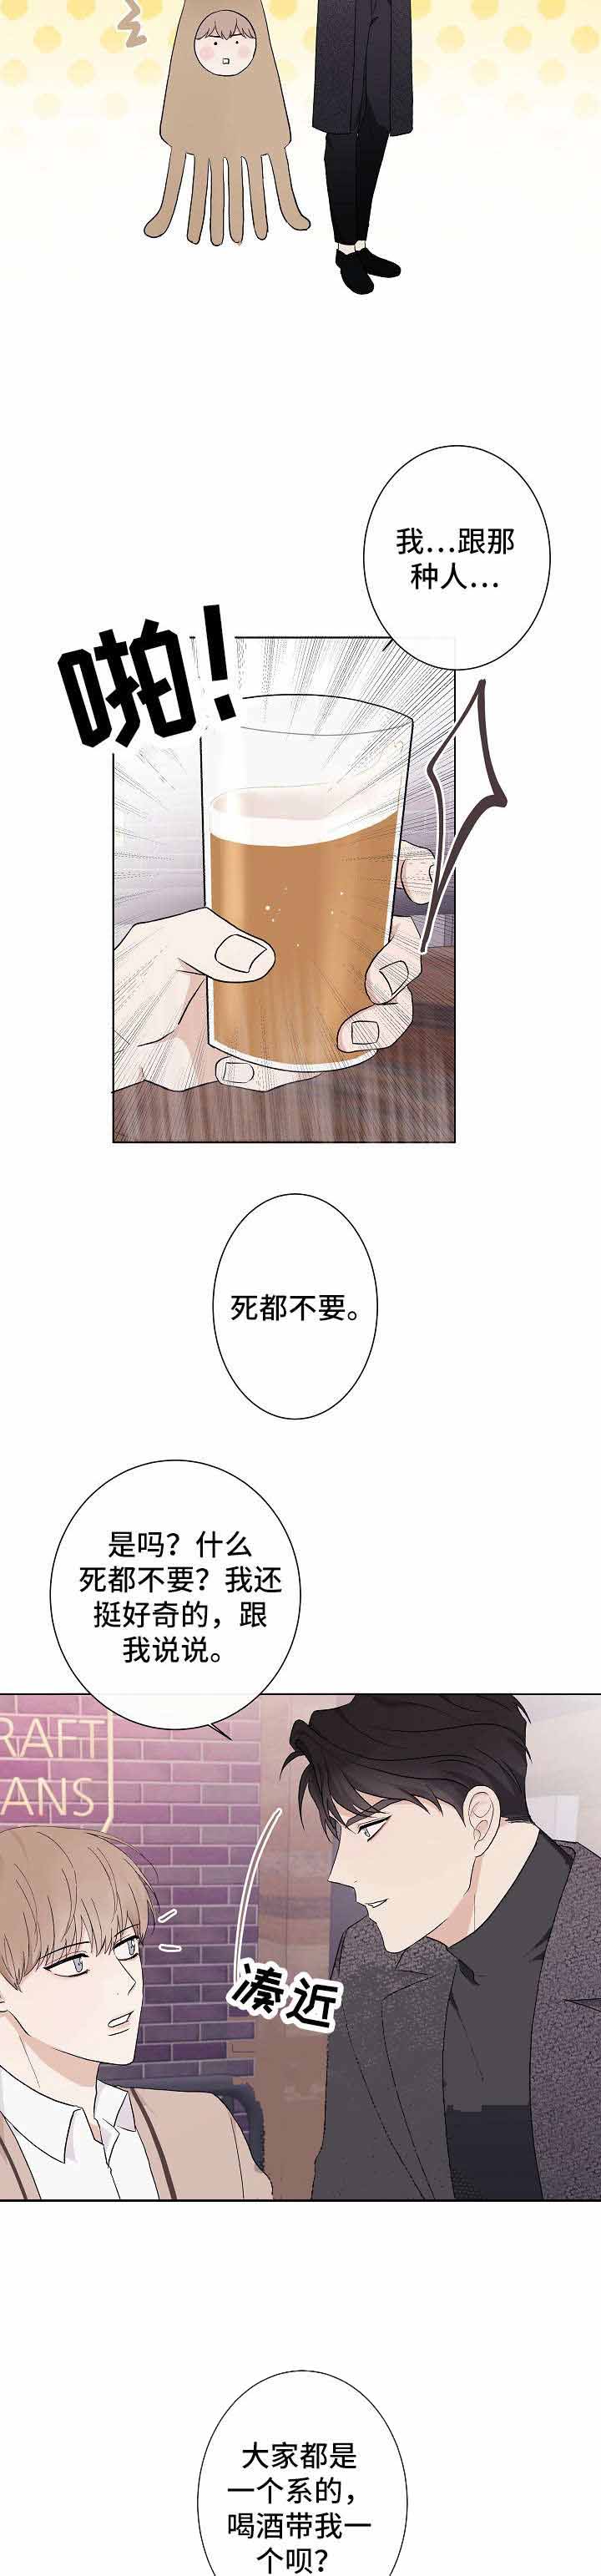 兼职恋人  第3话 漫画图片2.jpg